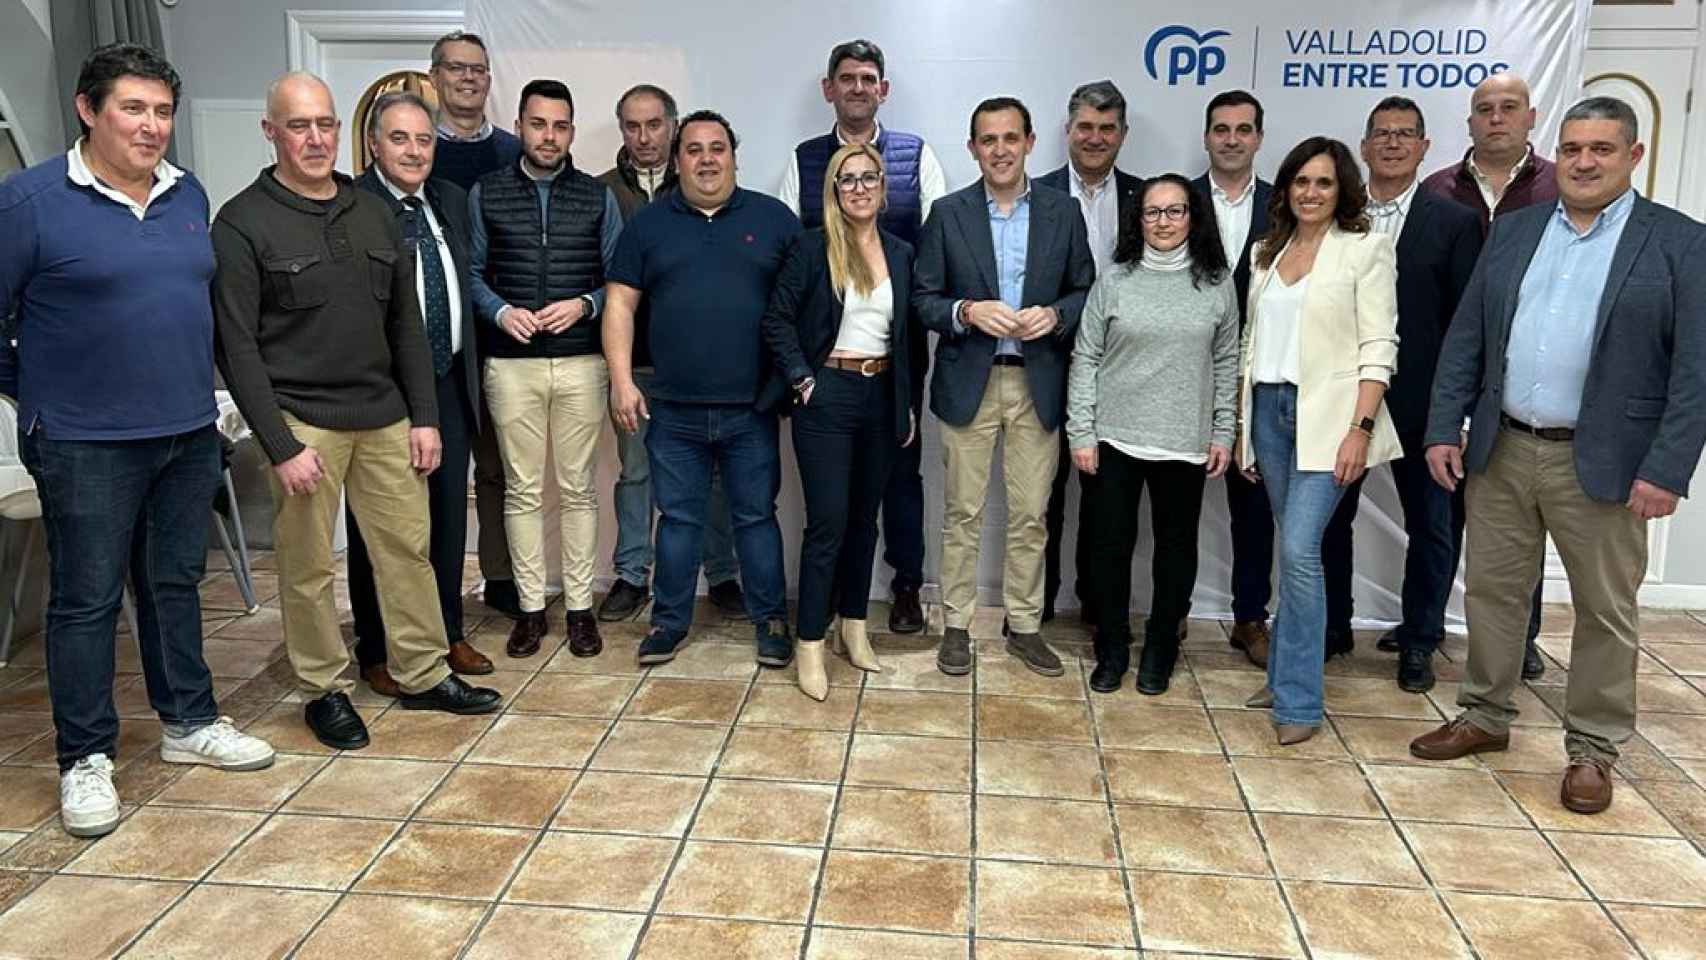 Candidatos del PP en la zona de Tudela de Duero